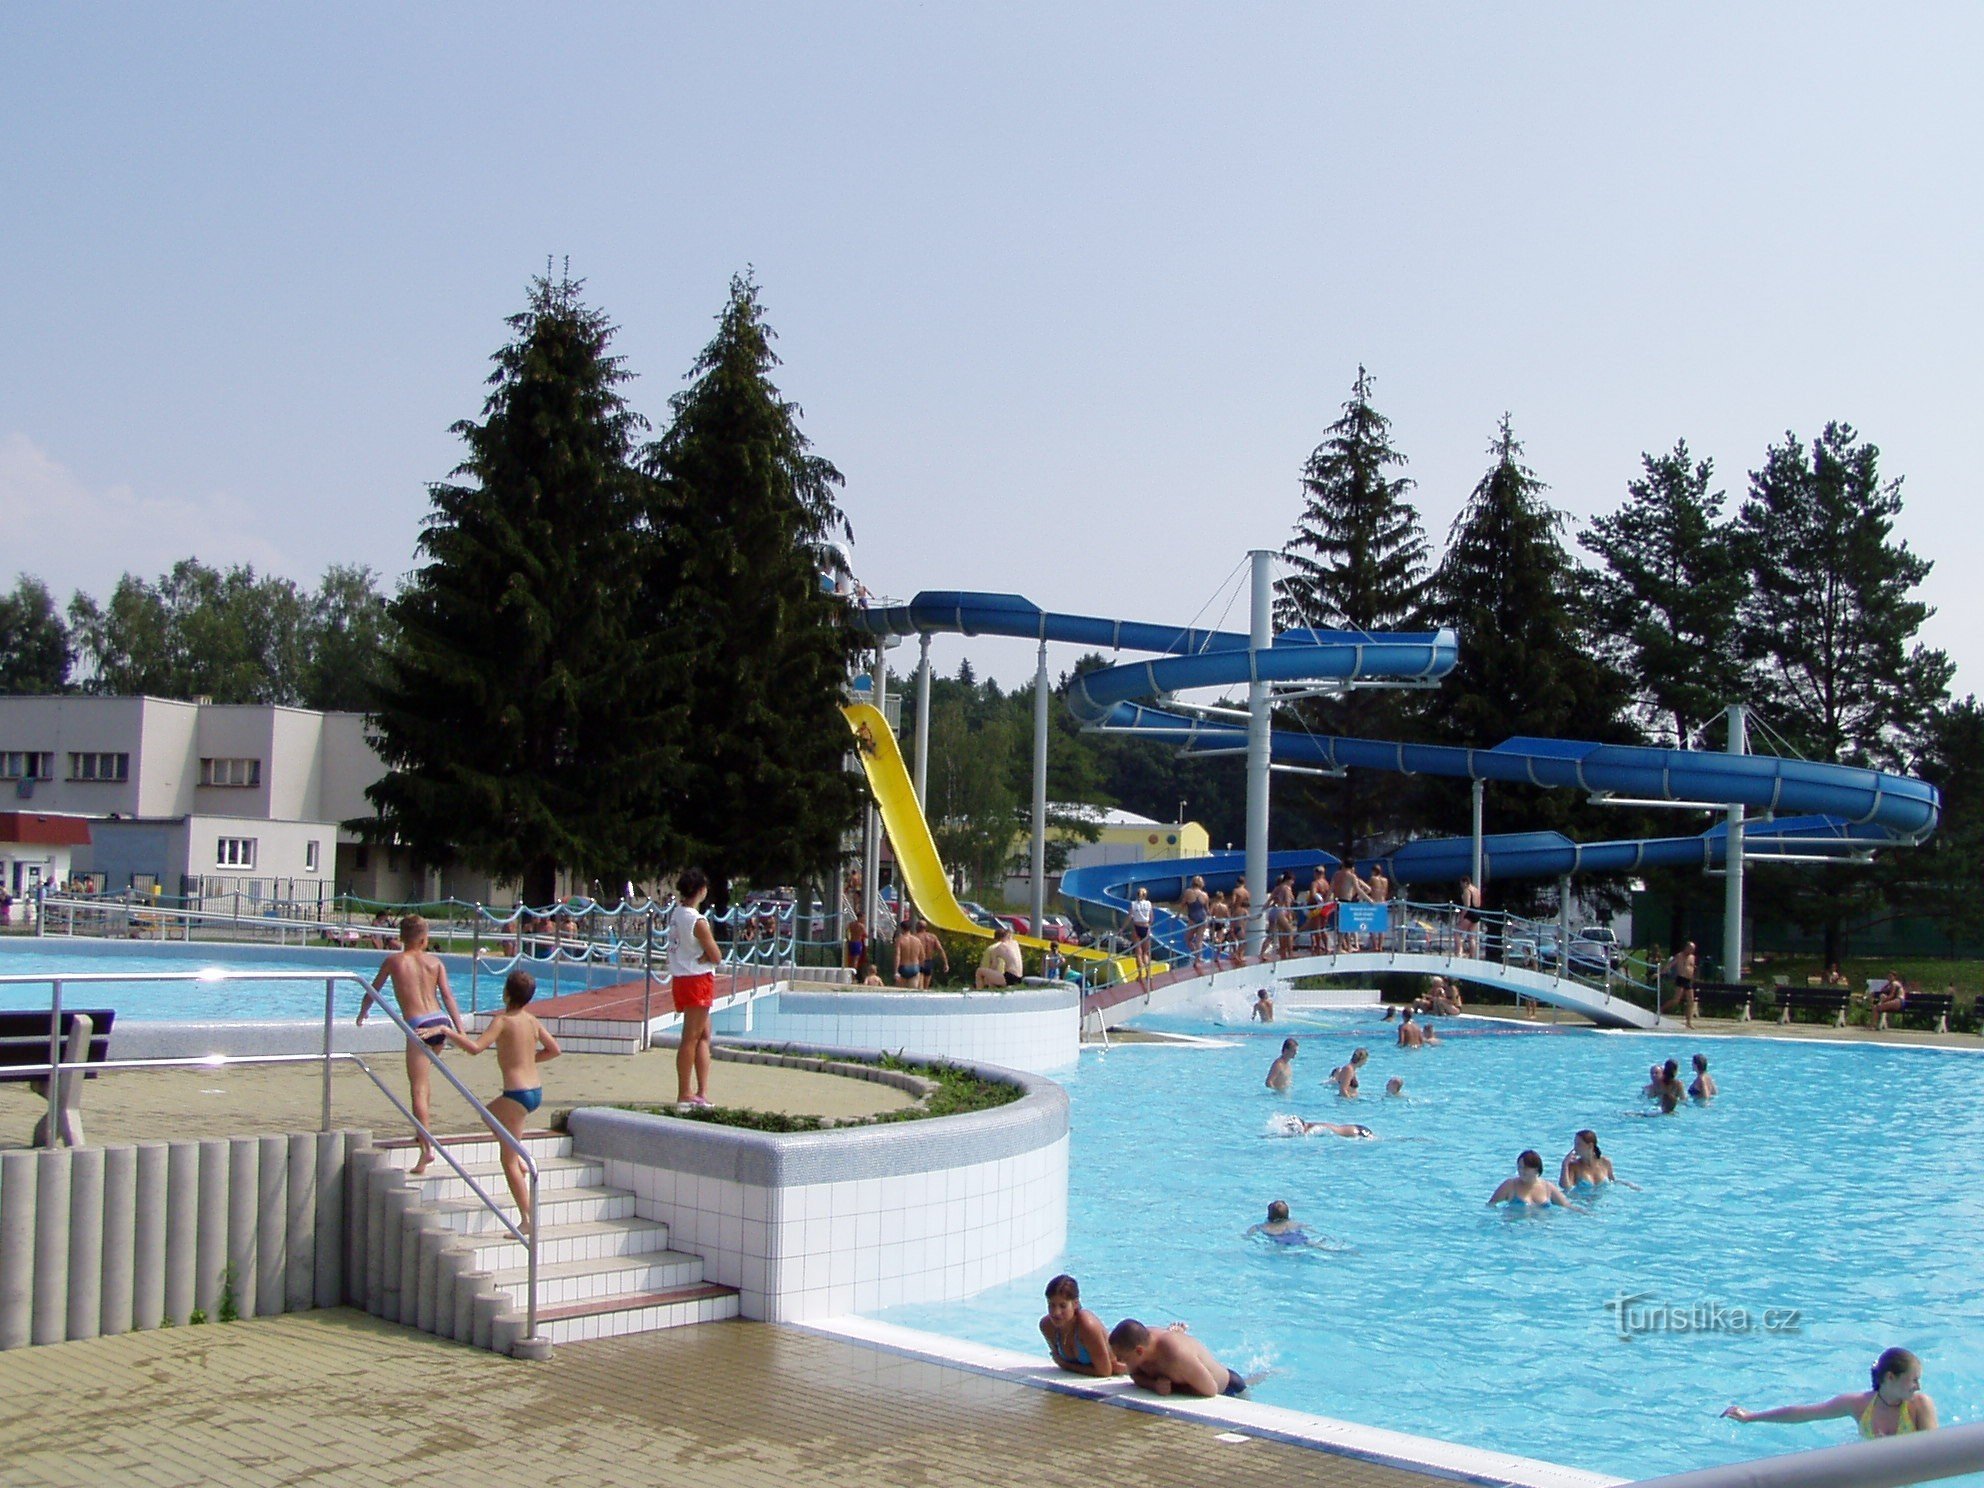 Ústí nad Orlicí - parque acuático, piscina (foto tomada del sitio web del operador)